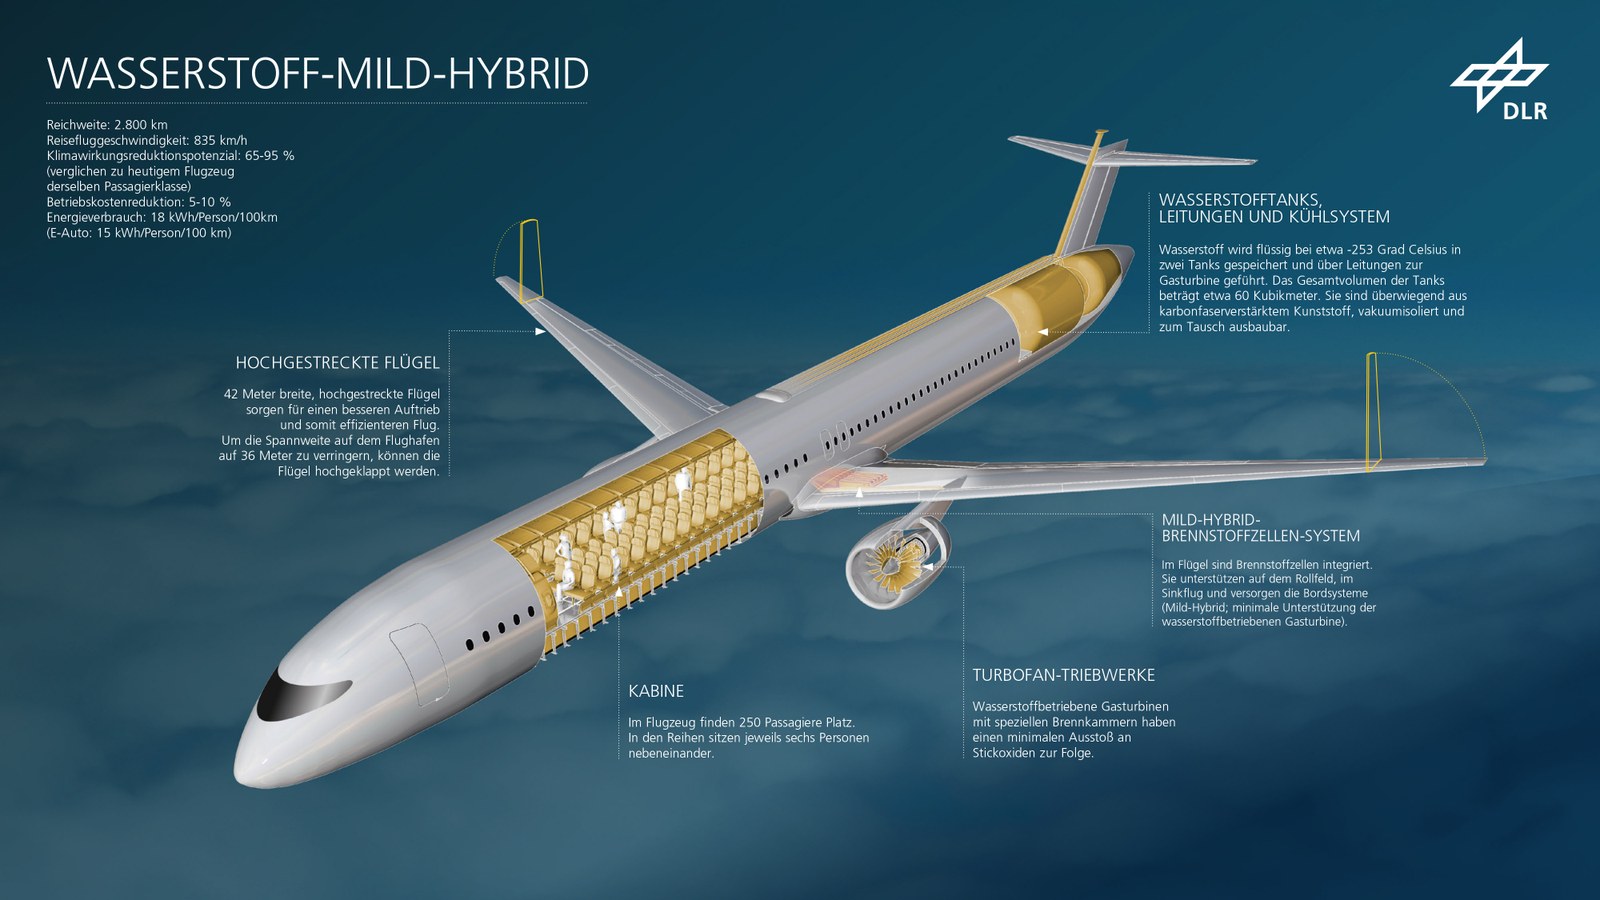 Flugzeugkonfiguration WASSERSTOFF-MILD-HYBRID mit erklärender Beschriftung